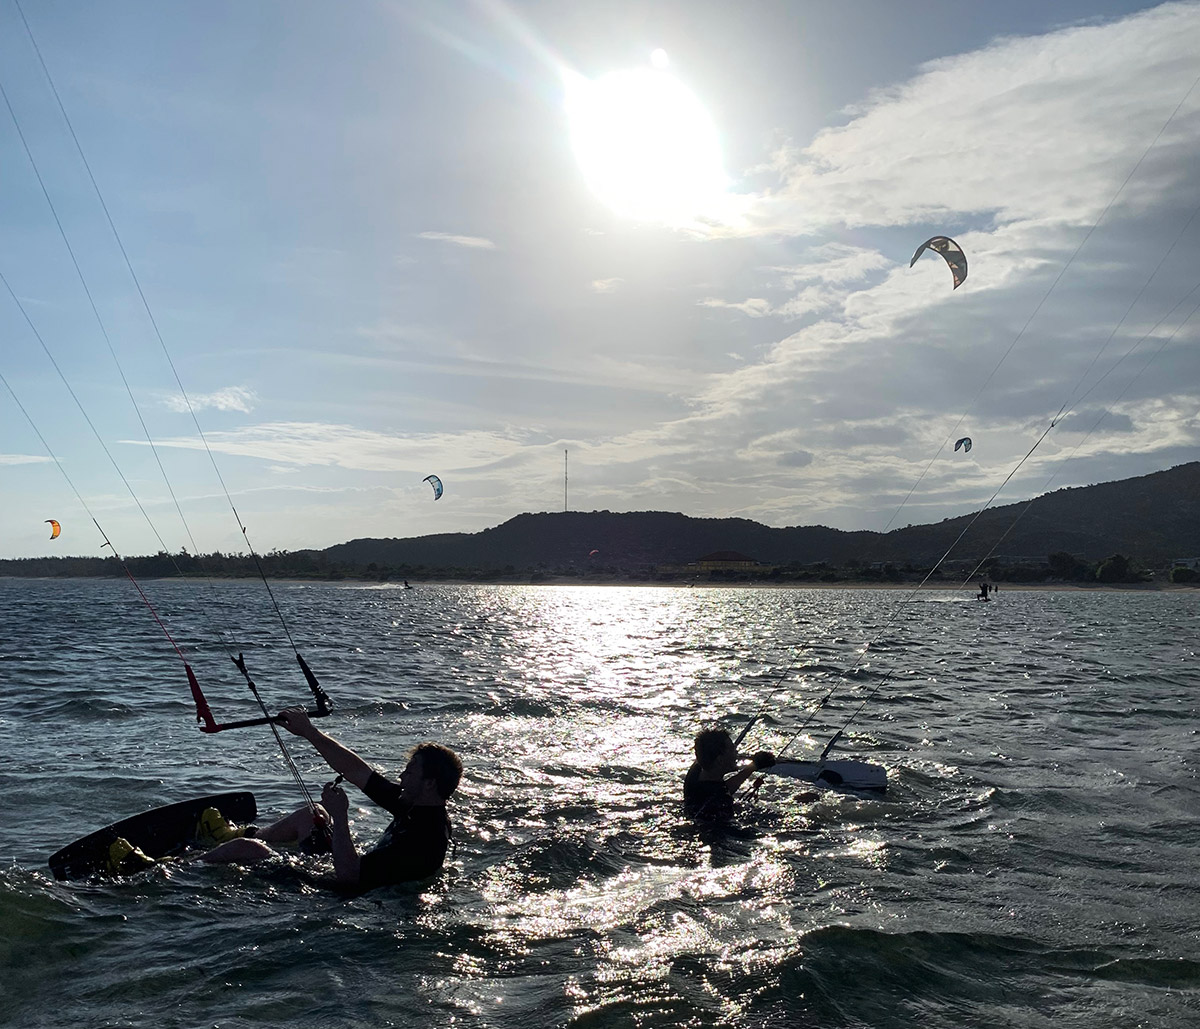 Två kitesurfer i vattnet, ta en paus från ridning i My Hoa lagunen, Phan Rang.